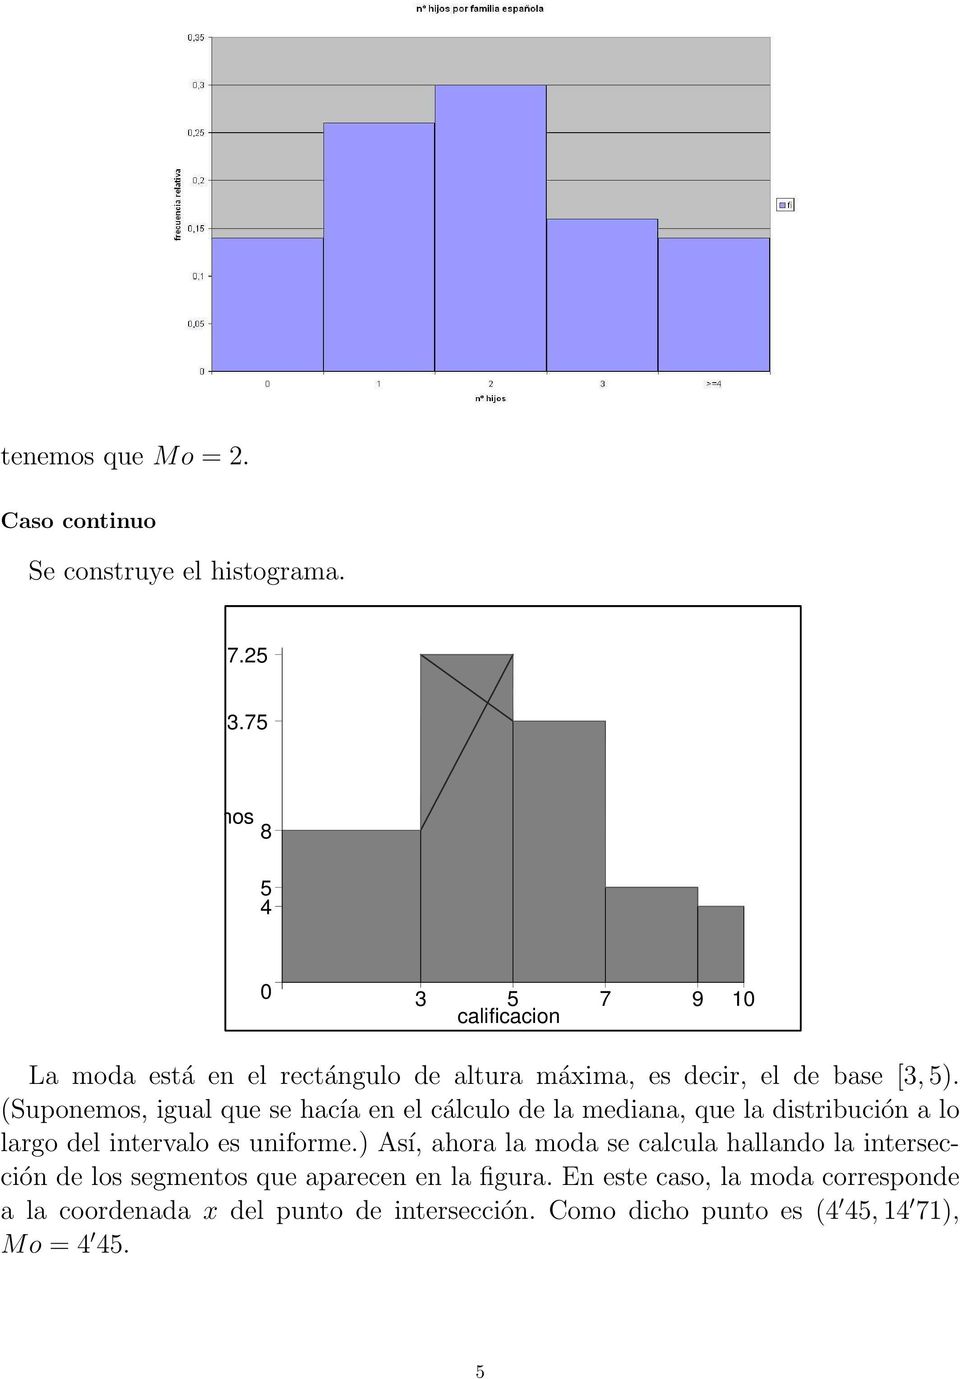 (Suponemos, igual que se hacía en el cálculo de la mediana, que la distribución a lo largo del intervalo es uniforme.